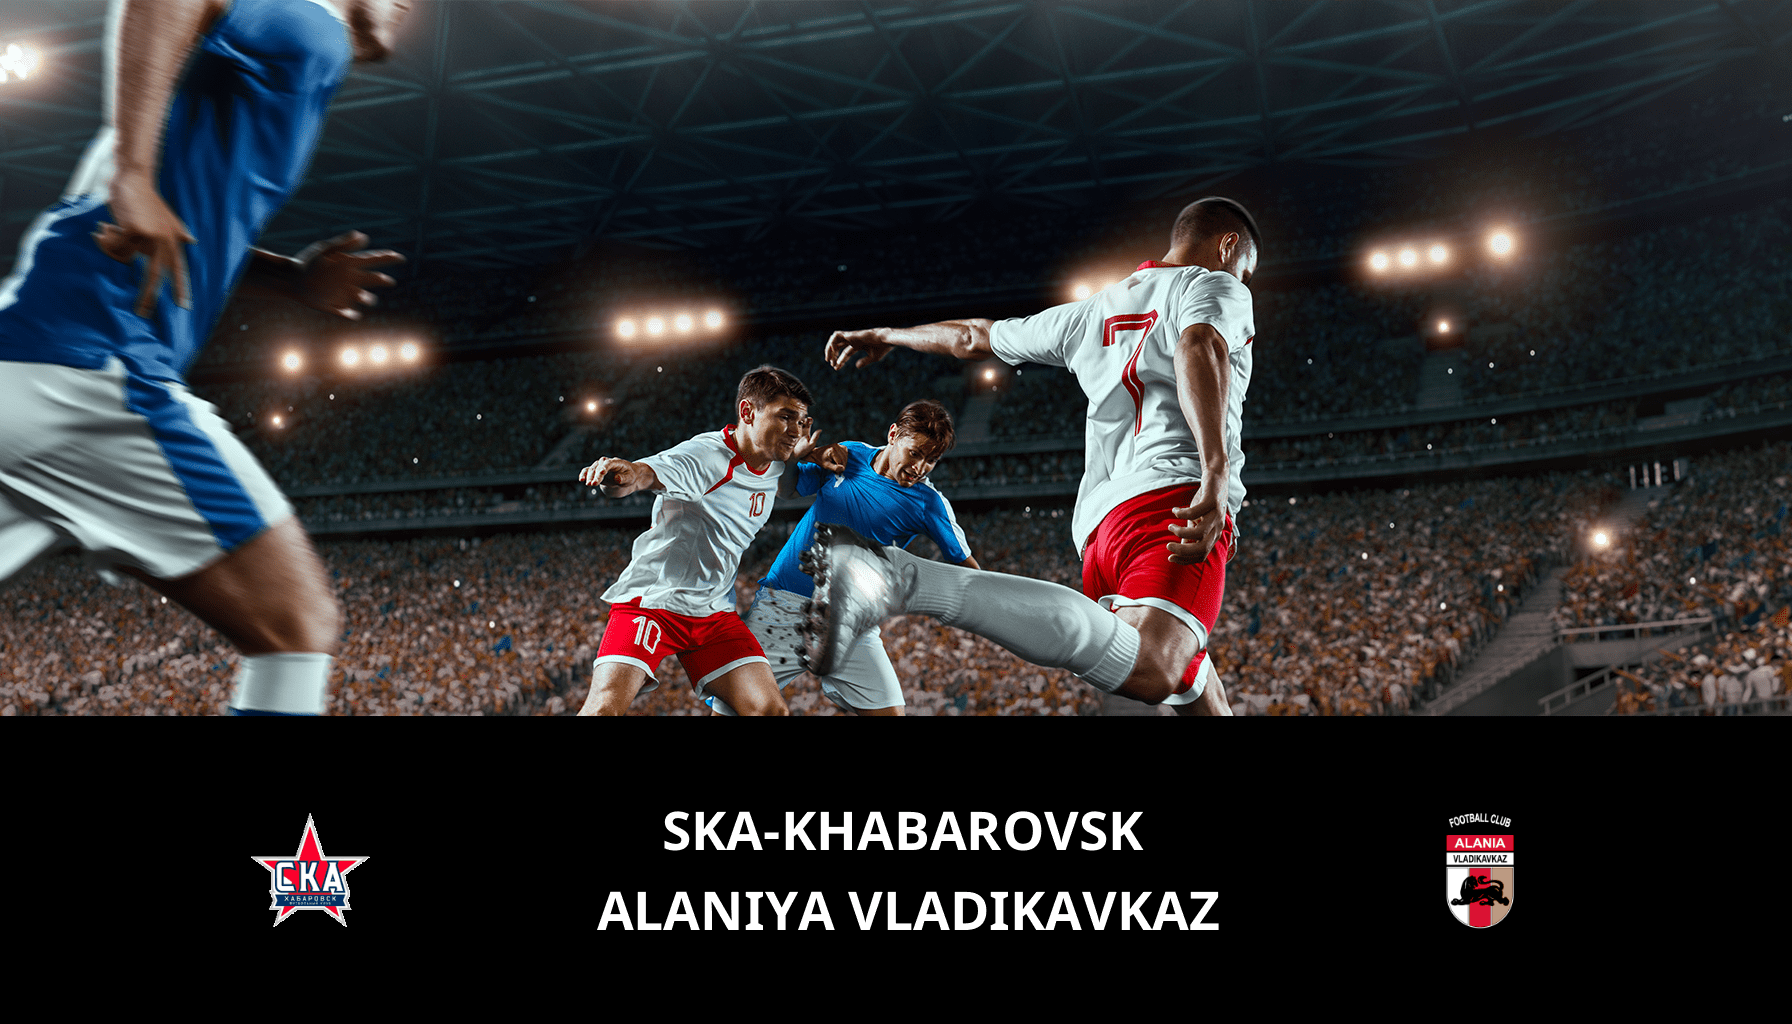 Previsione per Ska-khabarovsk VS Alaniya Vladikavkaz il 20/05/2024 Analysis of the match